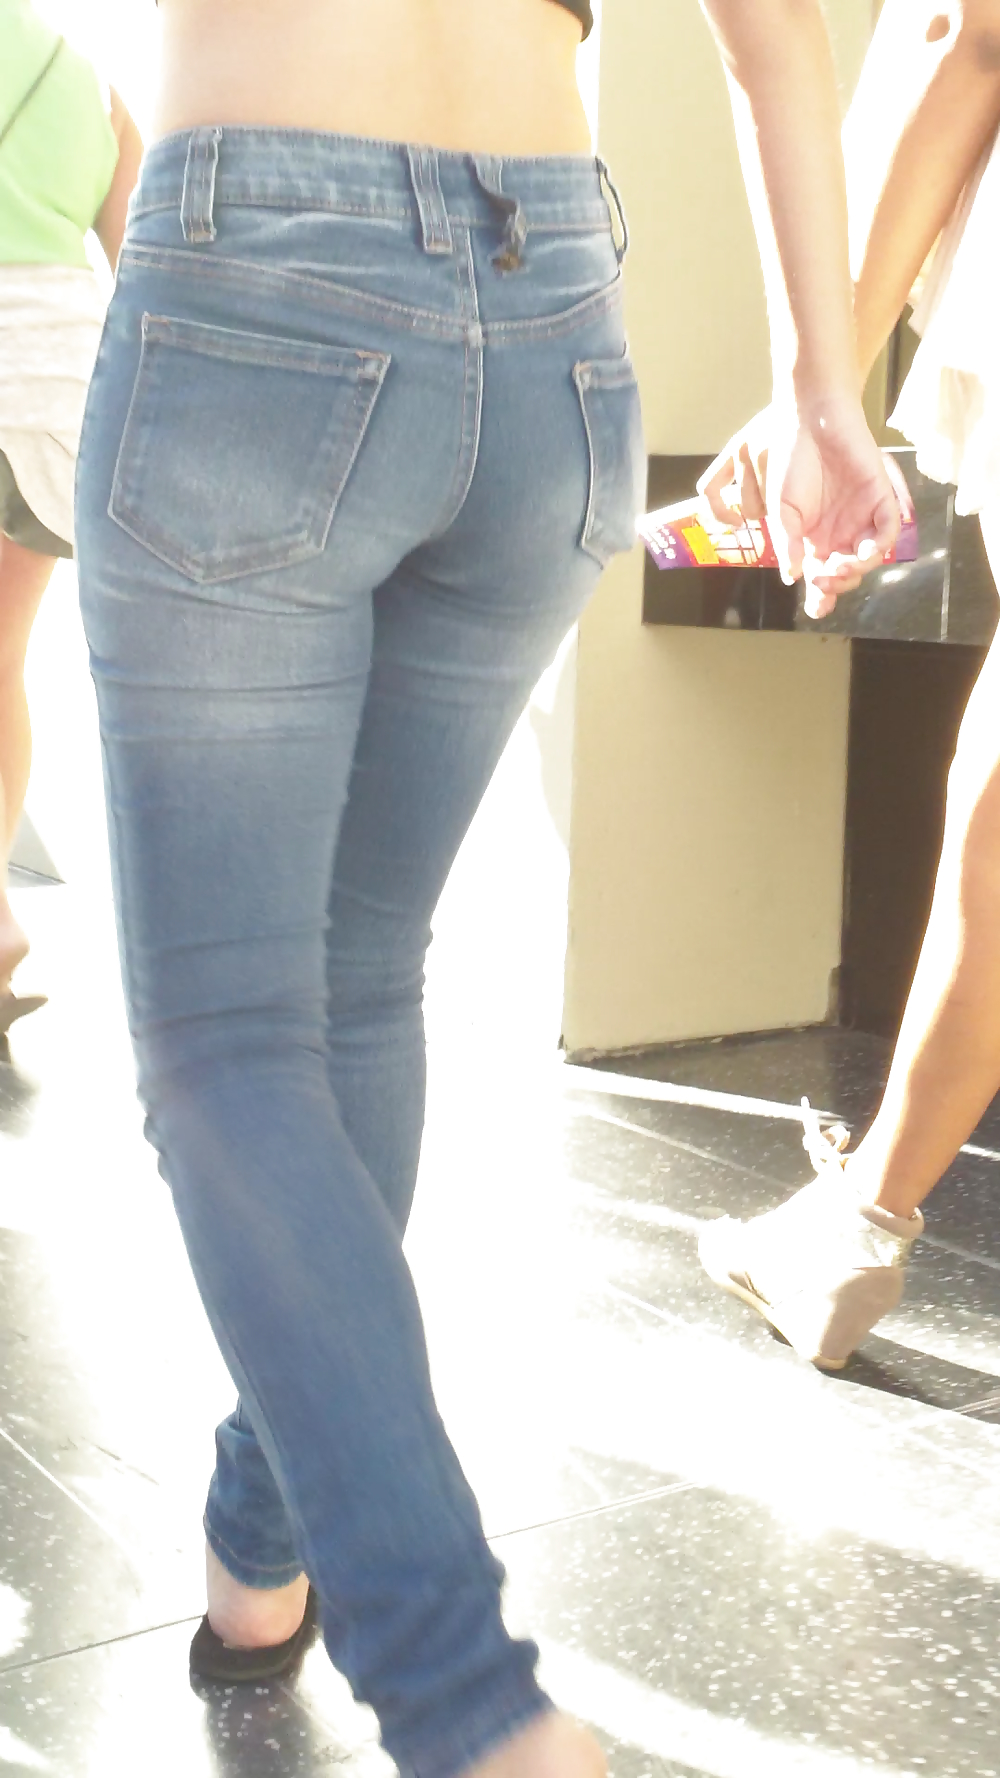 Beautiful cute tight teen ass & butt in blue jeans #21921757